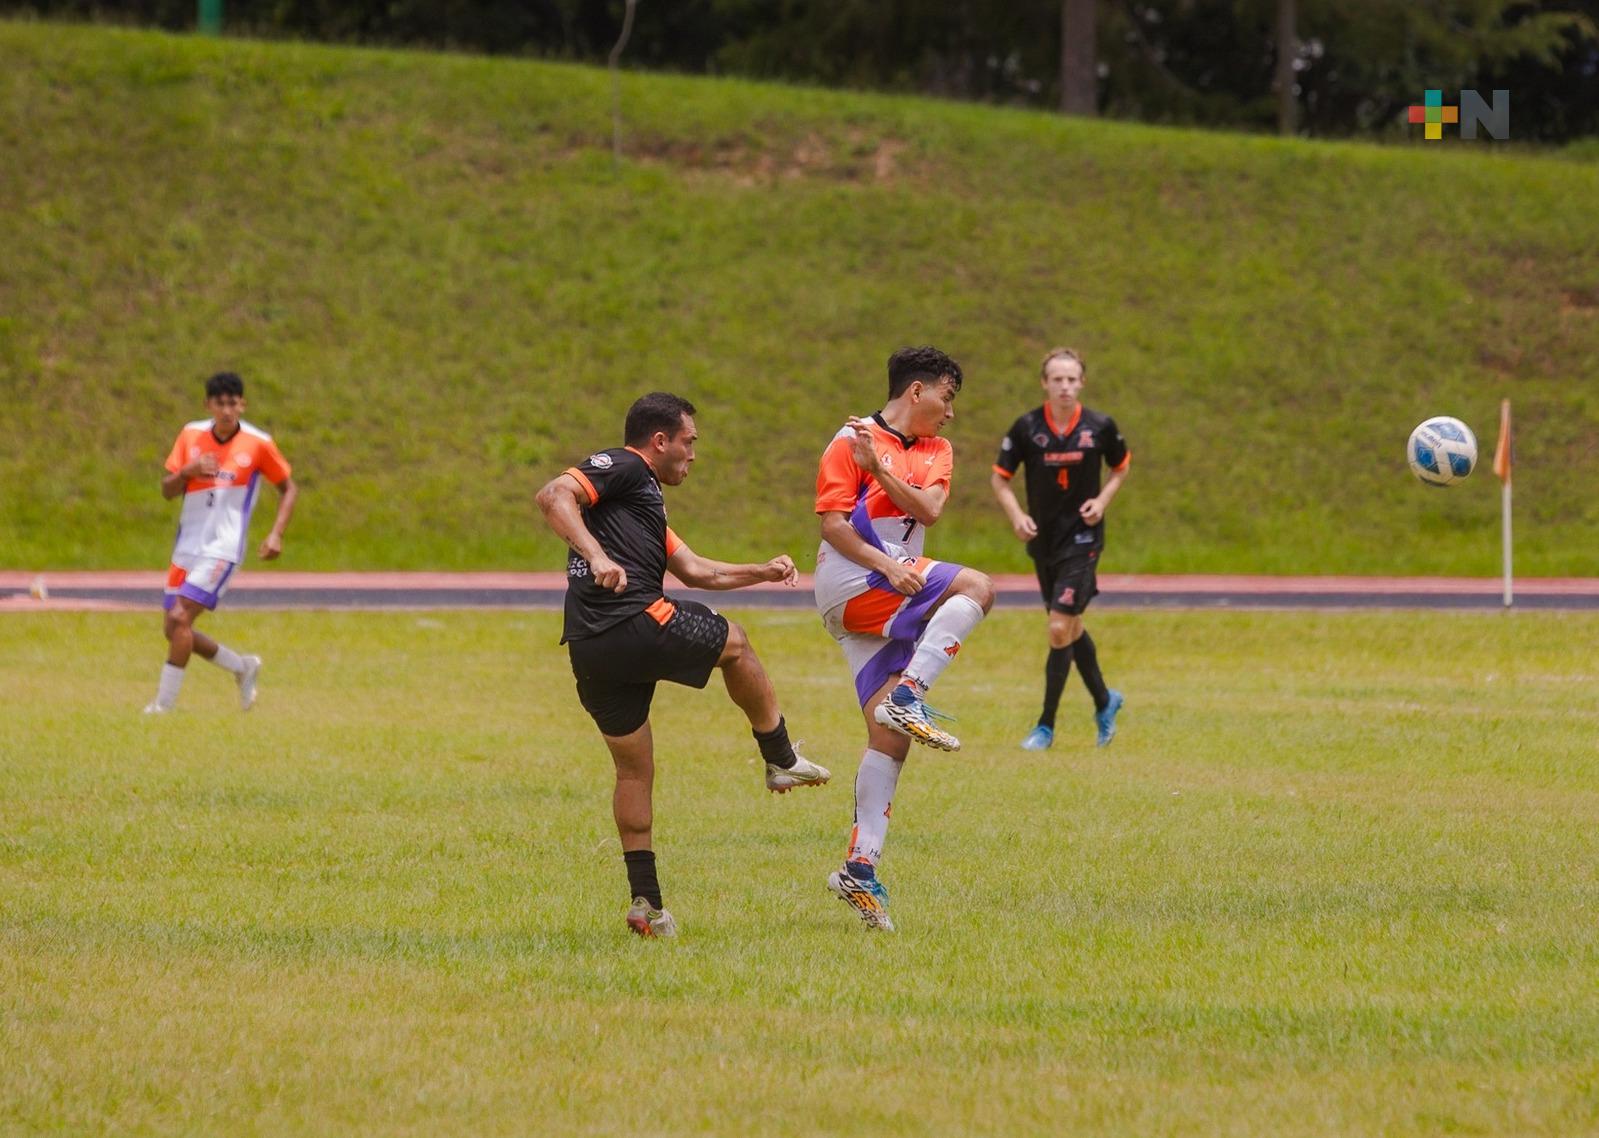 Alistan Leones Anáhuac Veracruz debut en campeonato nacional de futbol